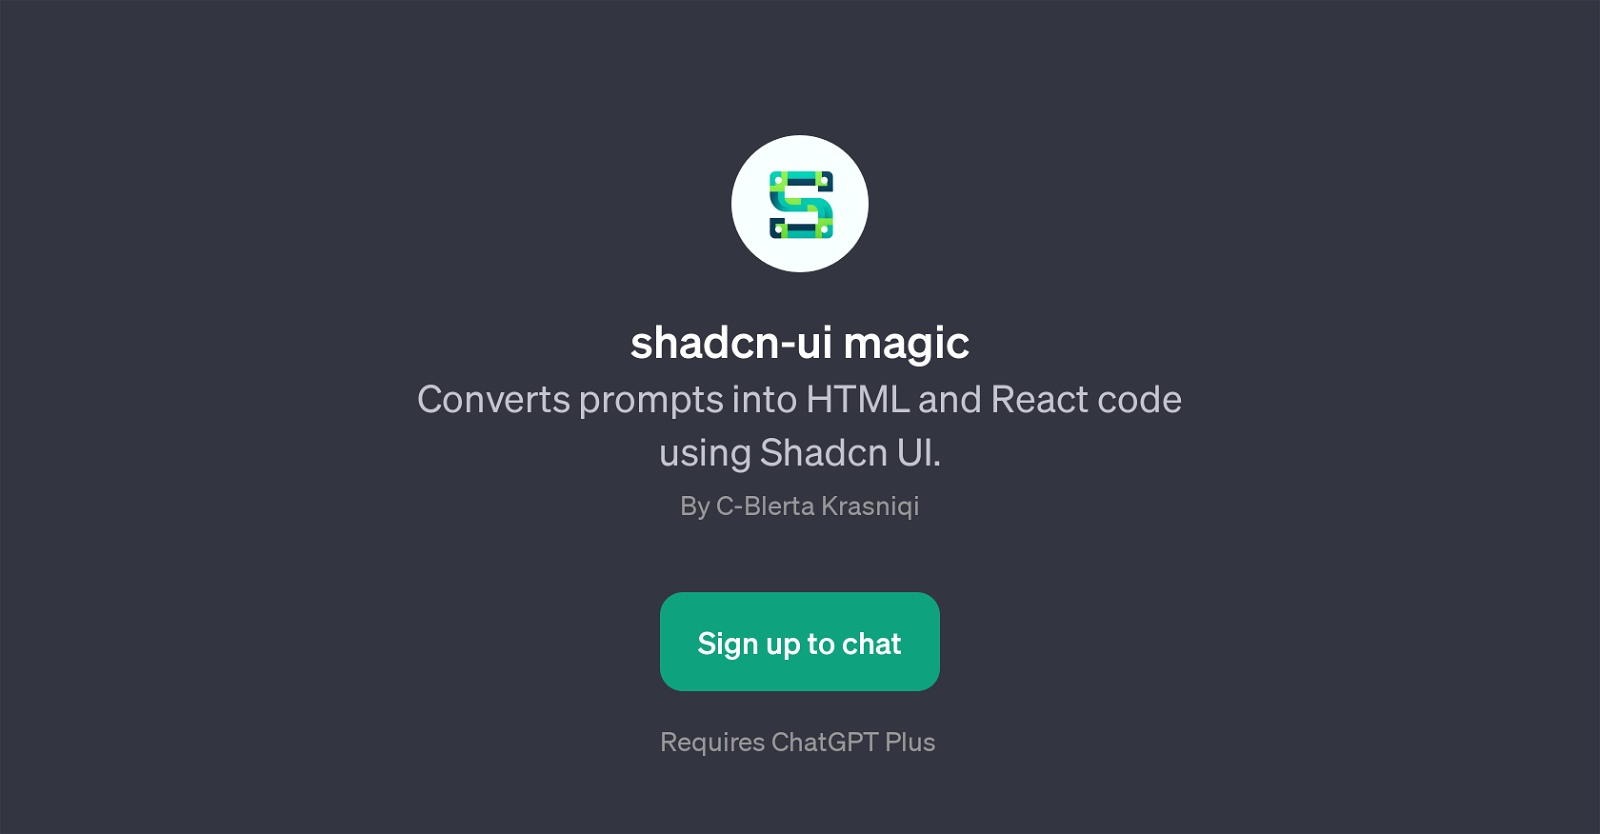 shadcn-ui magic website